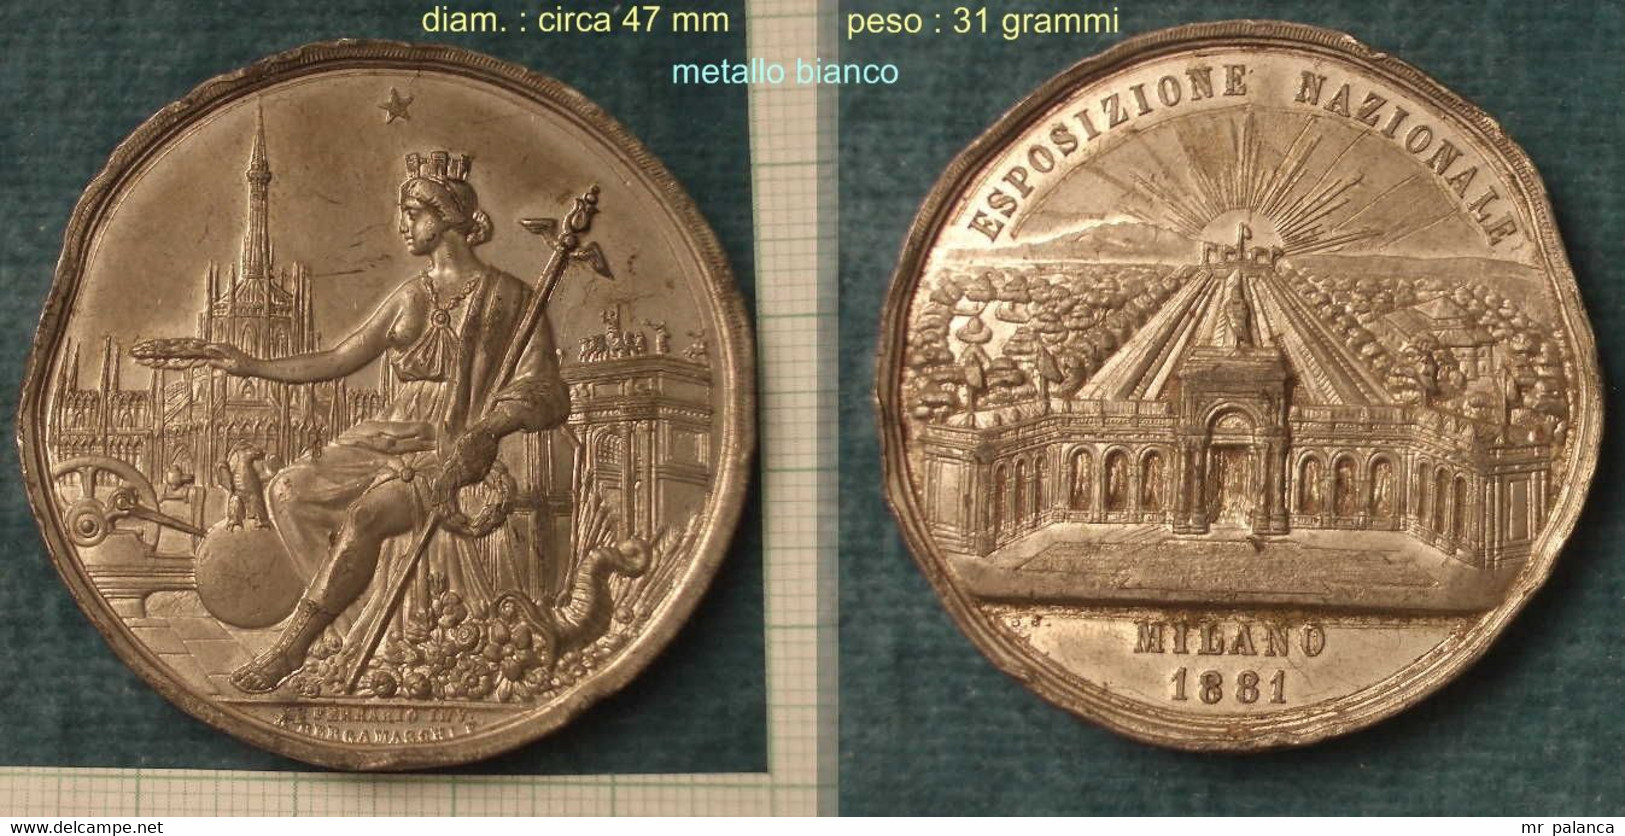 M_p> Medaglia " ESPOSIZIONE NAZIONALE MILANO 1881 " - Metallo Bianco - Diam. 47 Mm Peso 31 Grammi - Professionals/Firms